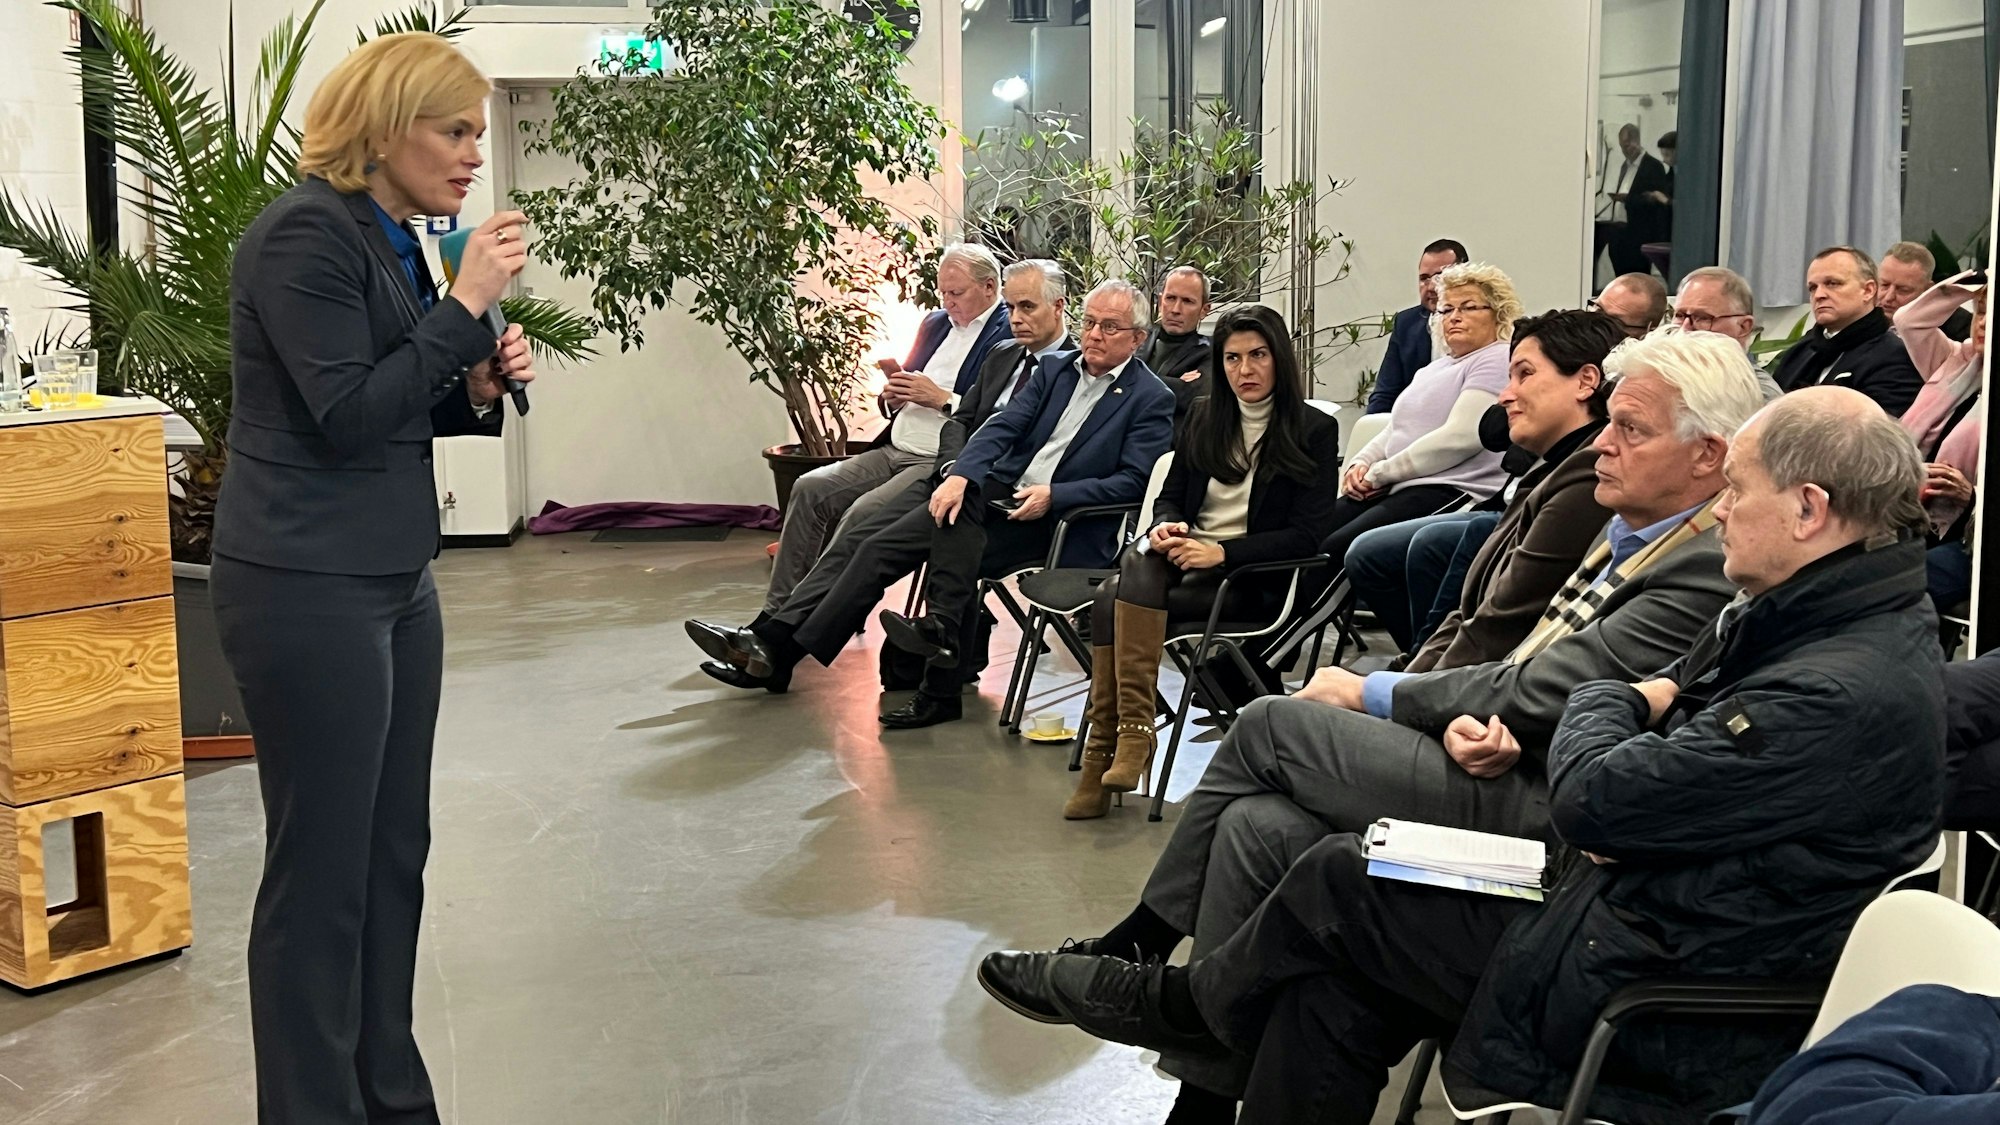 Julia Klöckner, Wirtschaftspolitische Sprecherin der CDU-Bundestagsfraktion. besucht das Probierwerk Leverkusen und spricht zu Unternehmerinnen und Unternehmern aus der Stadt und der Region.